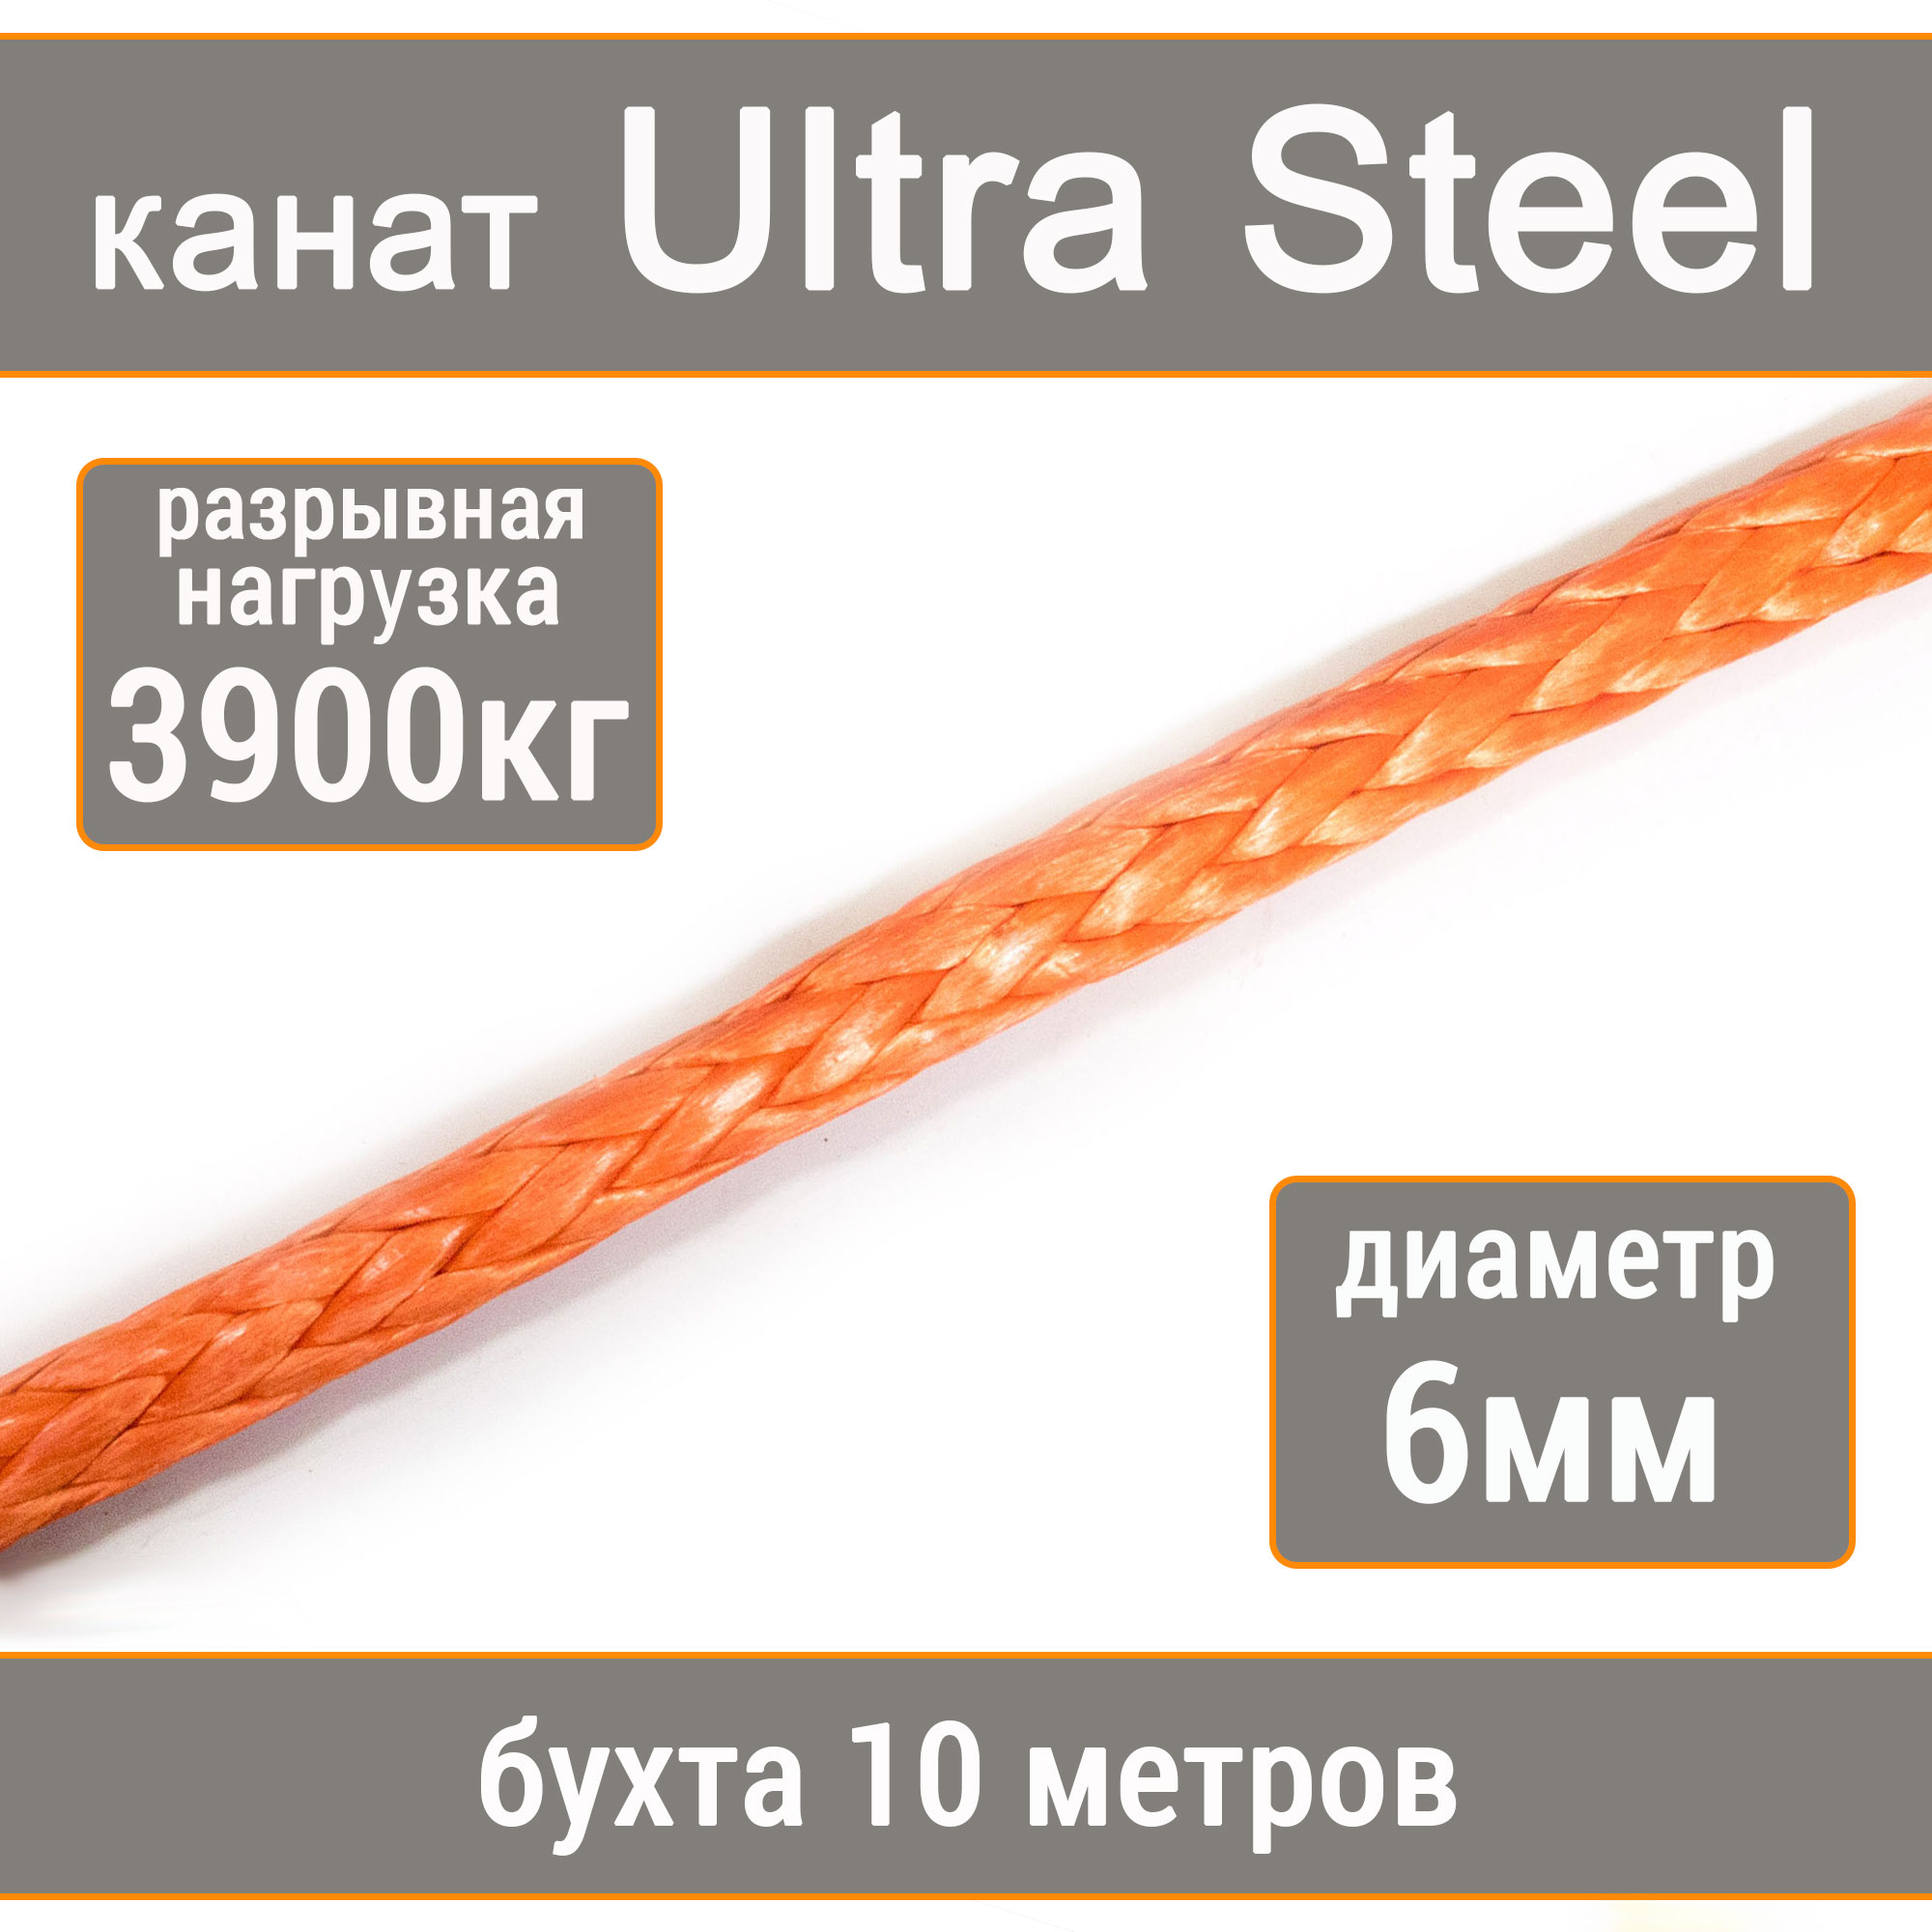 Высокопрочный синтетический канат UTX Ultra Steel 6мм р.н.3900кг, 007654321-106